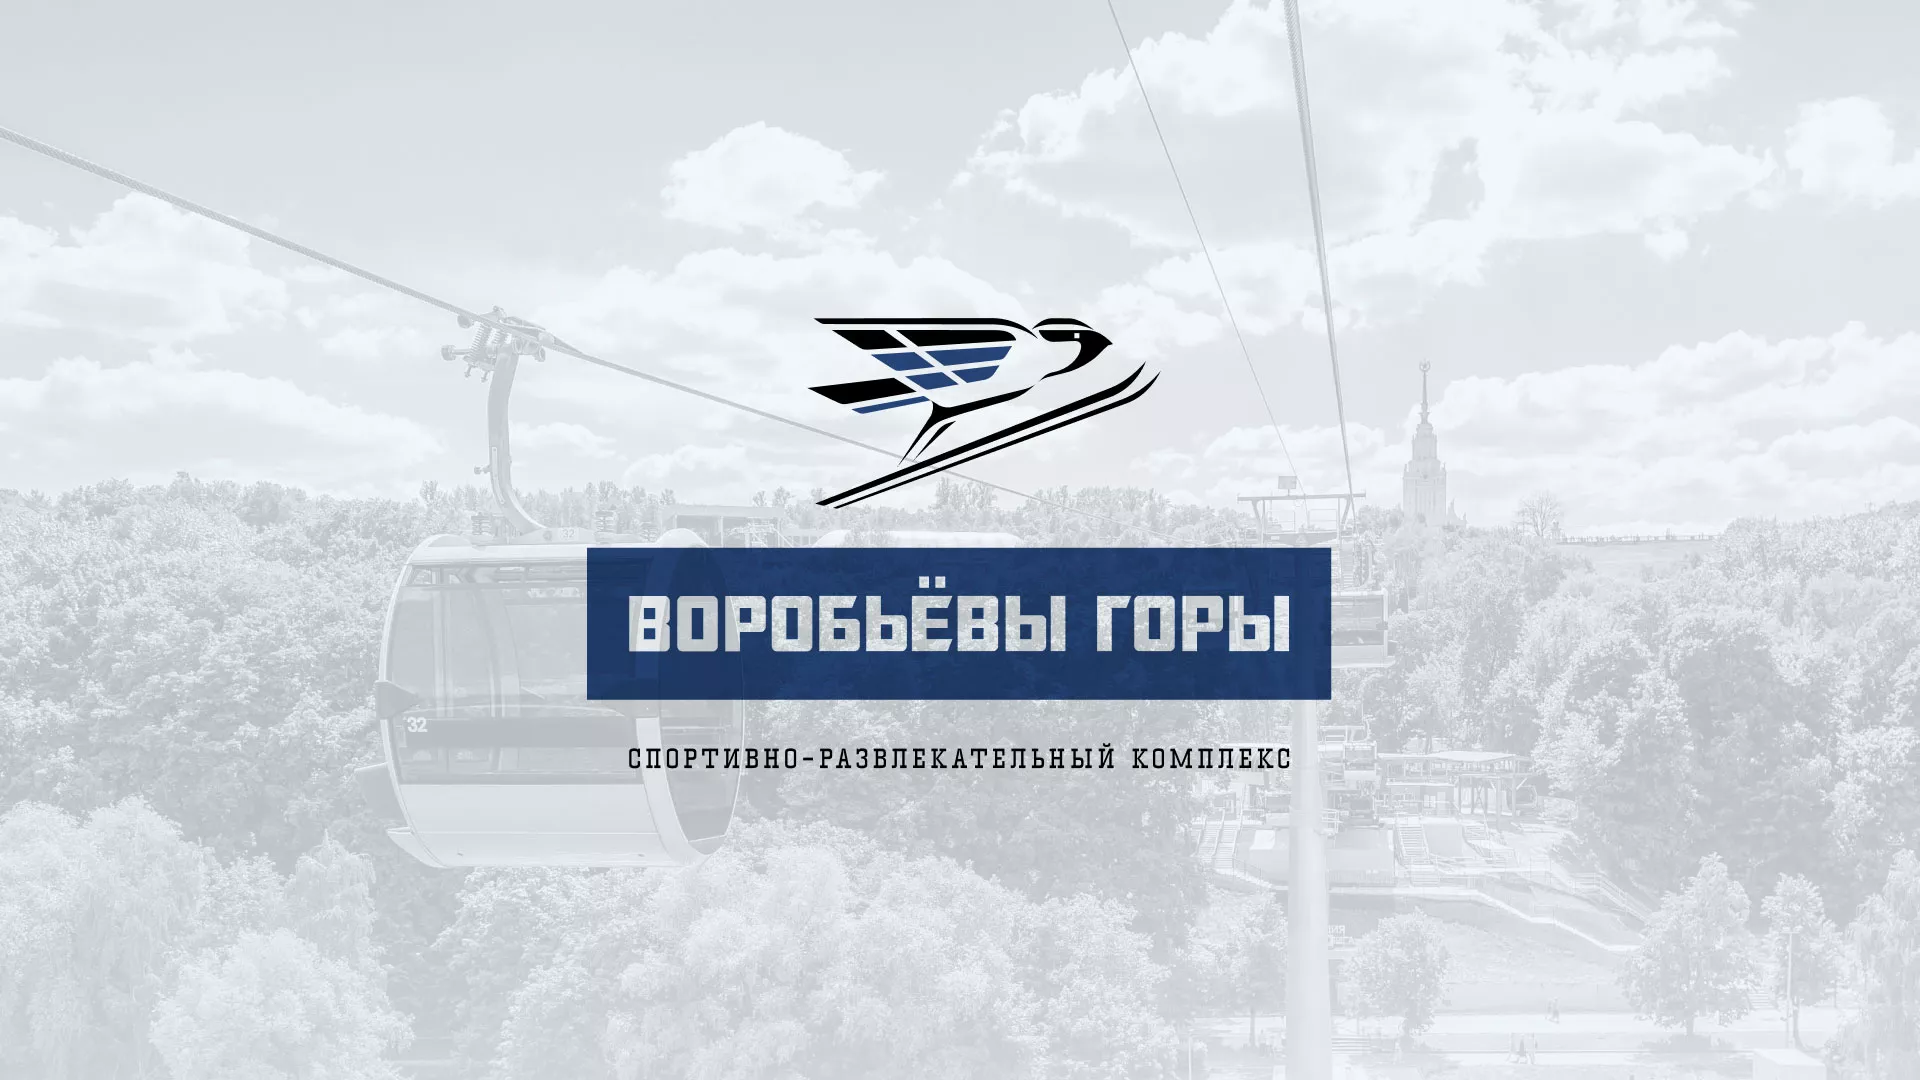 Разработка сайта в Семикаракорске для спортивно-развлекательного комплекса «Воробьёвы горы»